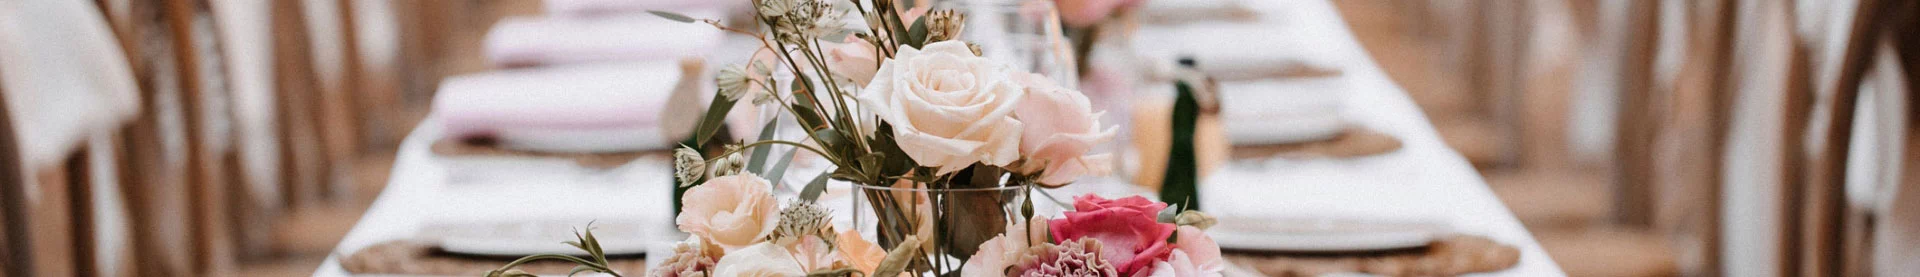 bukiet kwiatów na stole weselnym